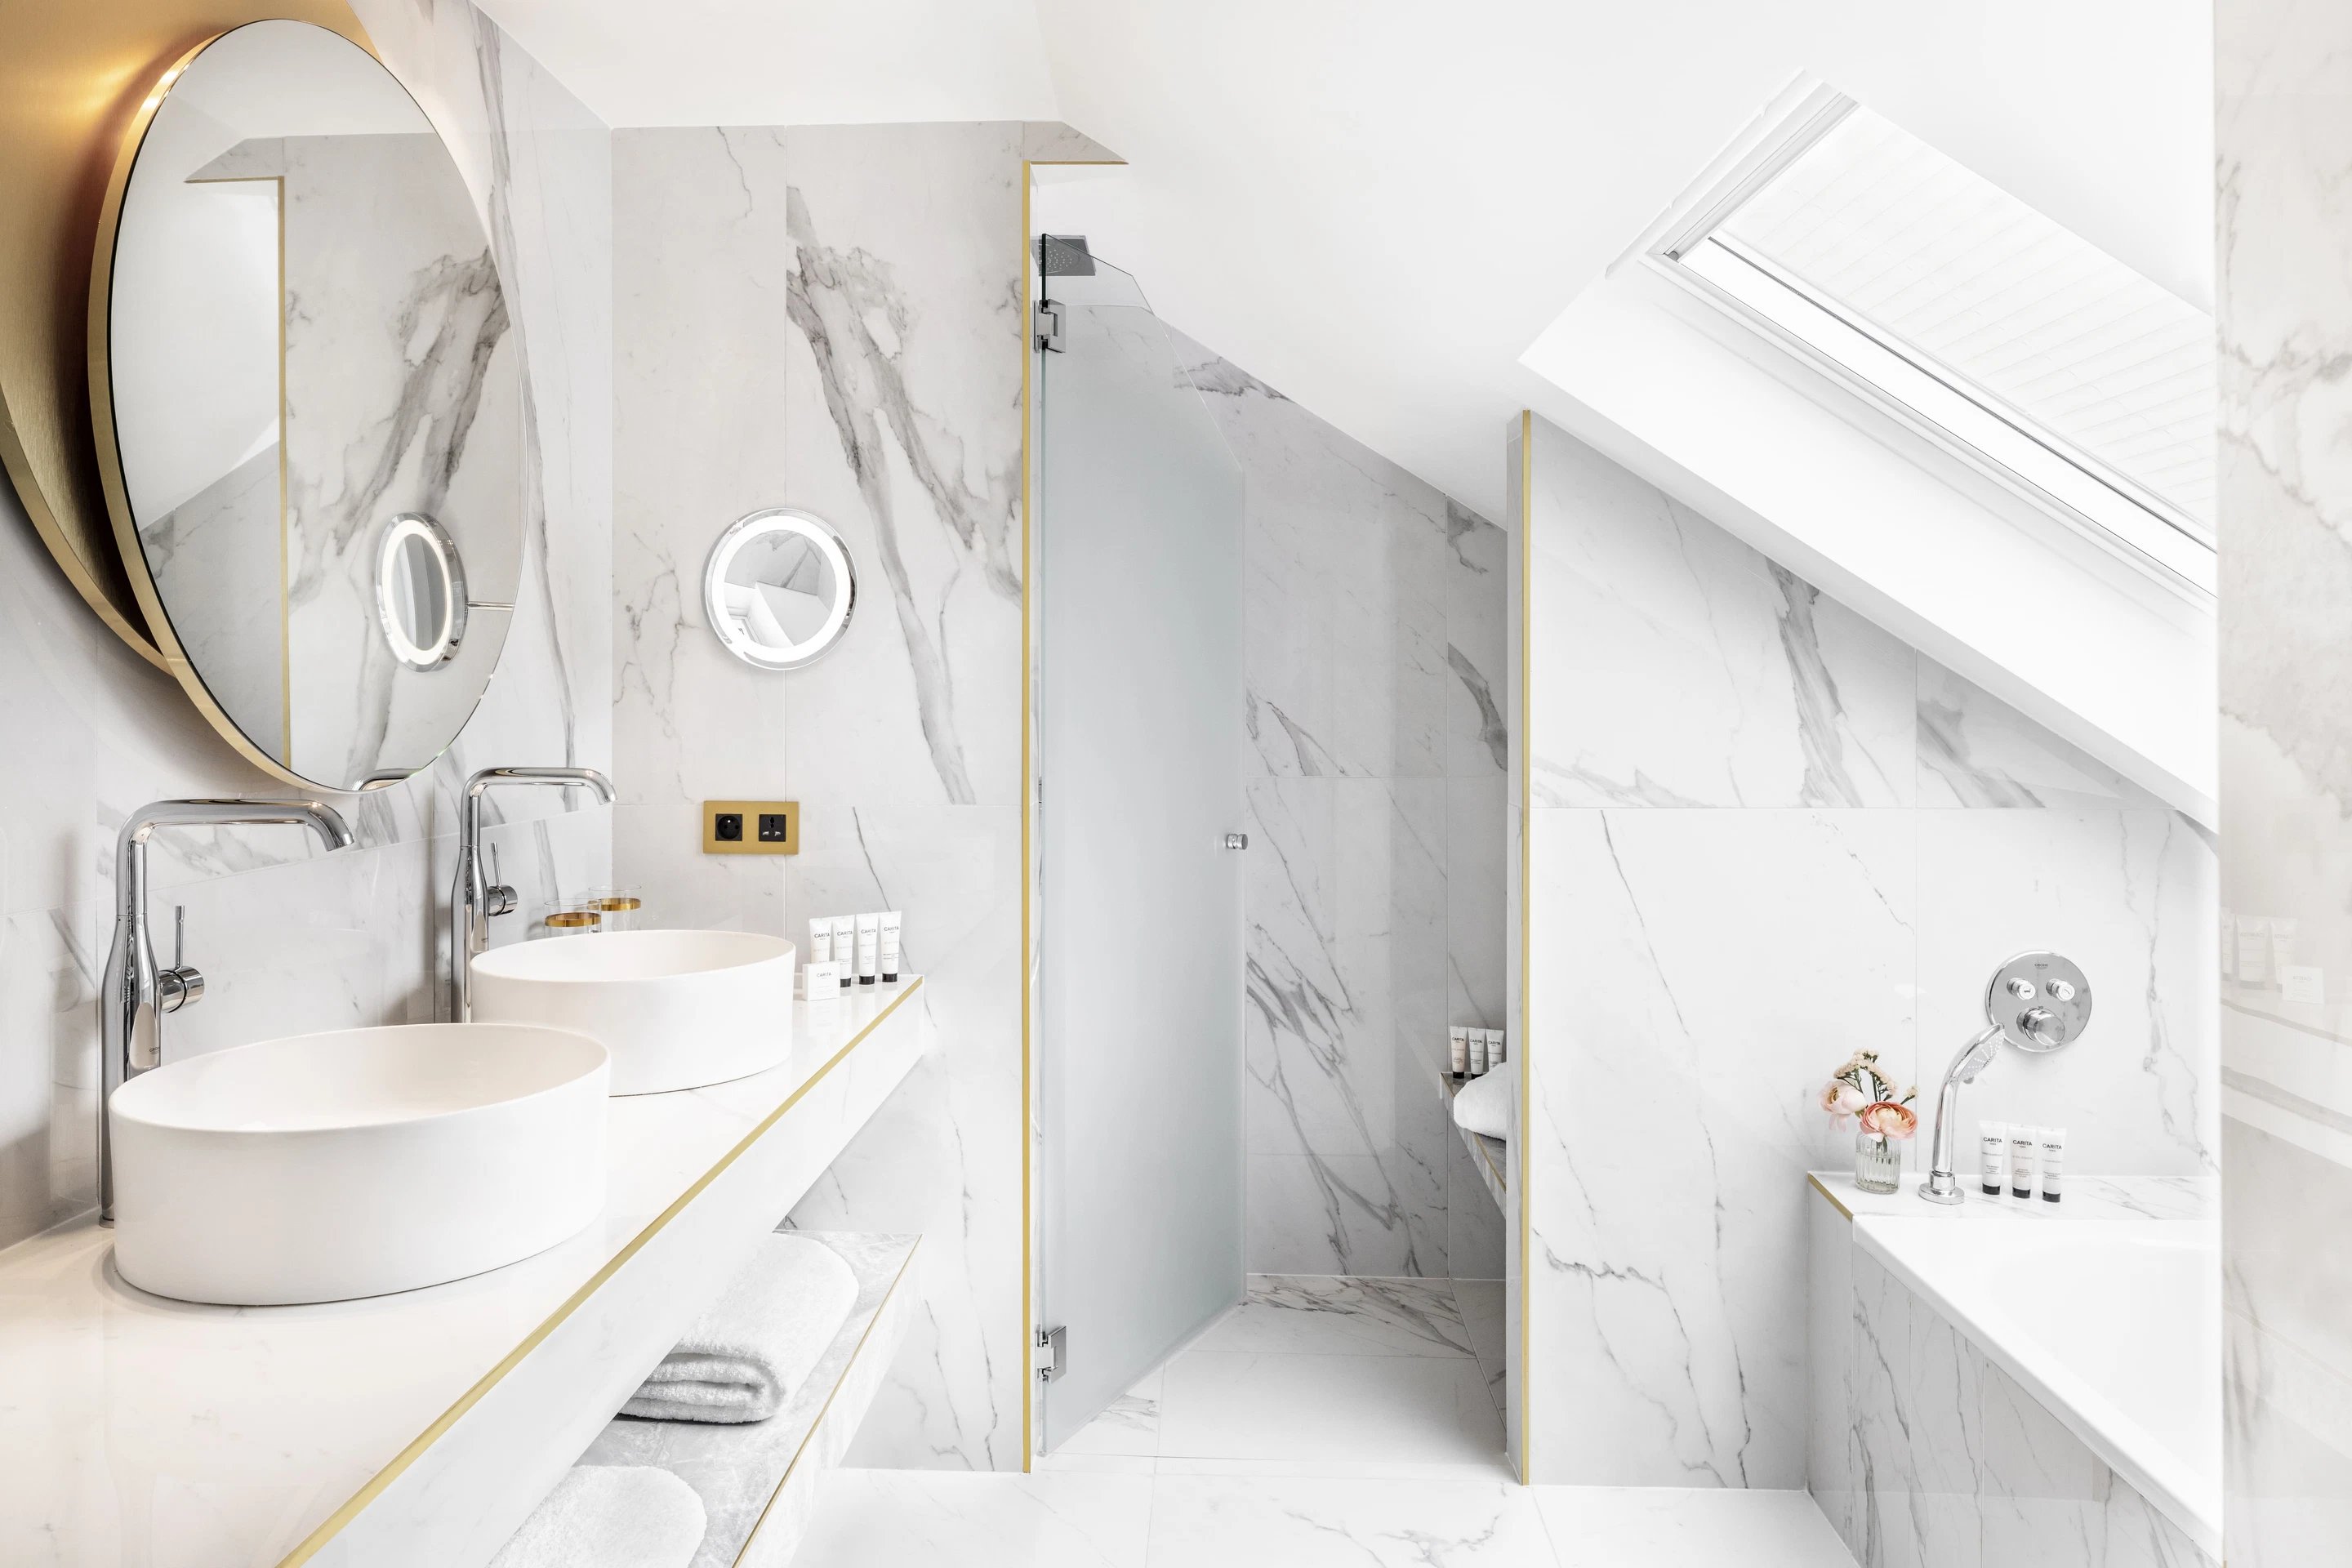 Luxury boutique hotel - Maison Albar Hotels Le Vendome 5 stars - bathroom suite vendome